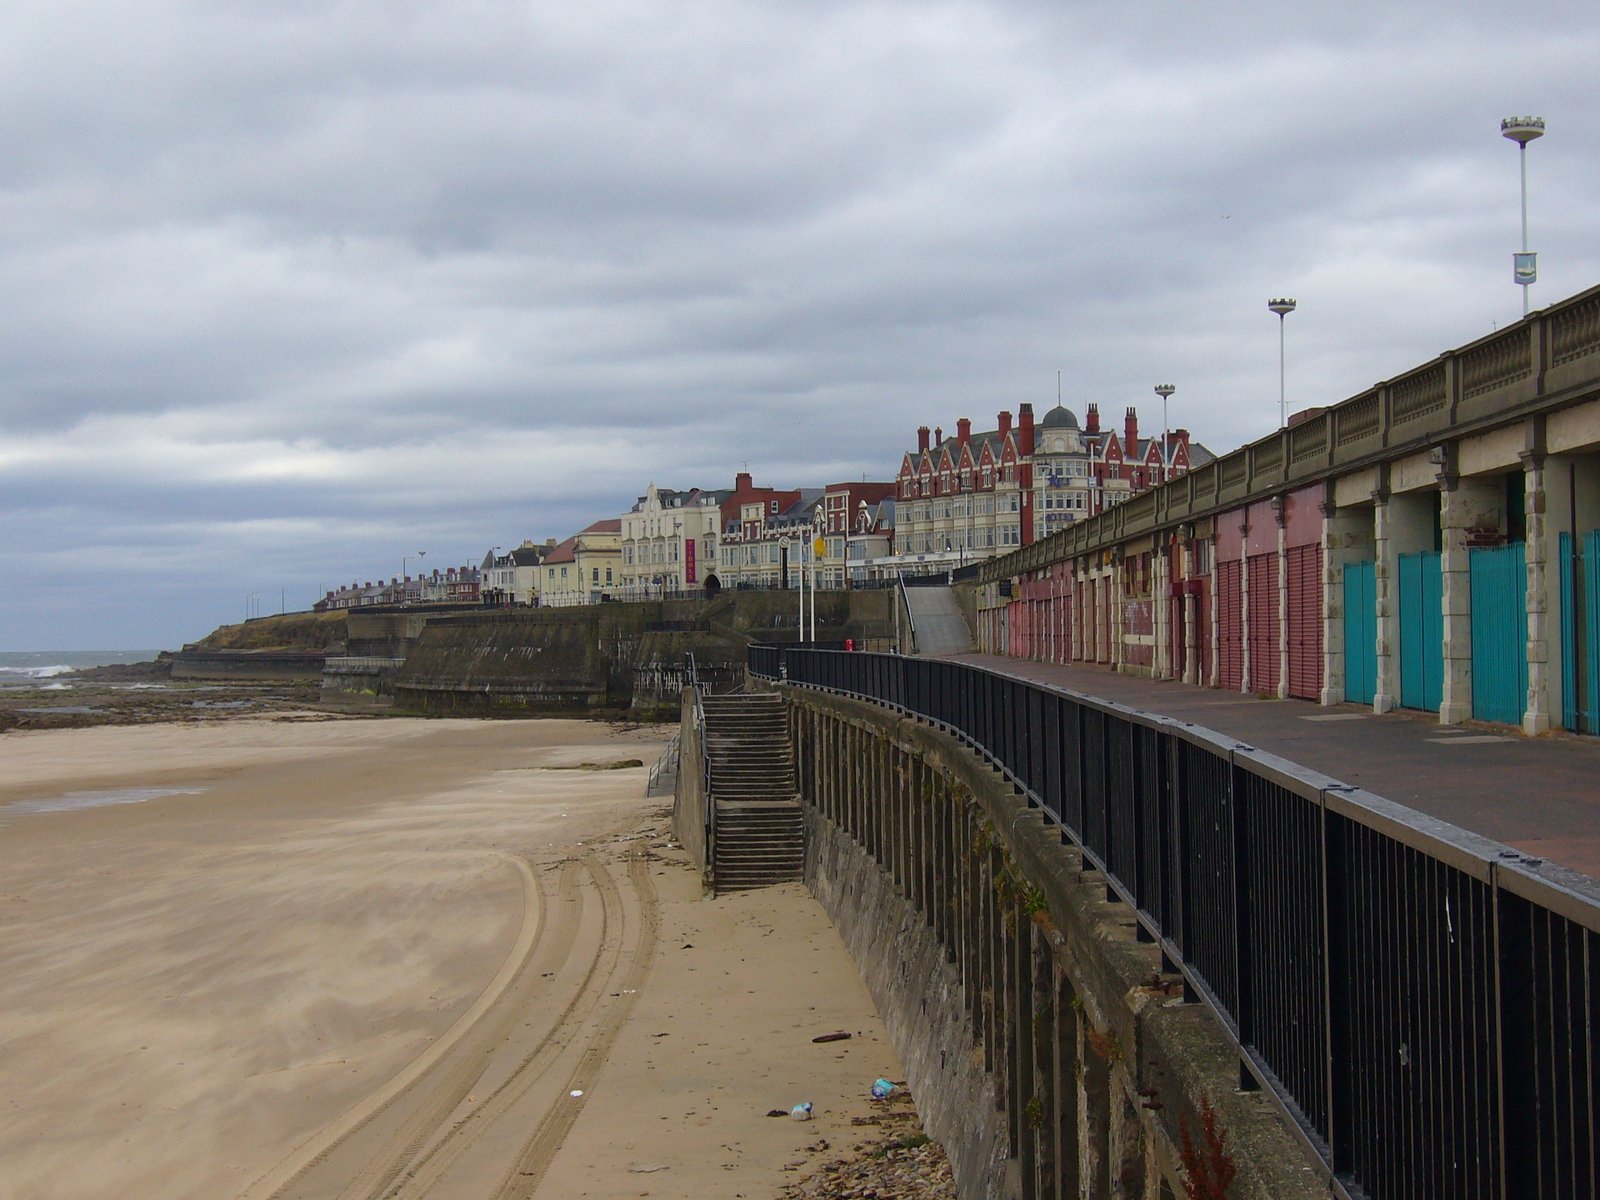 a fence is near the beach on a gloomy day